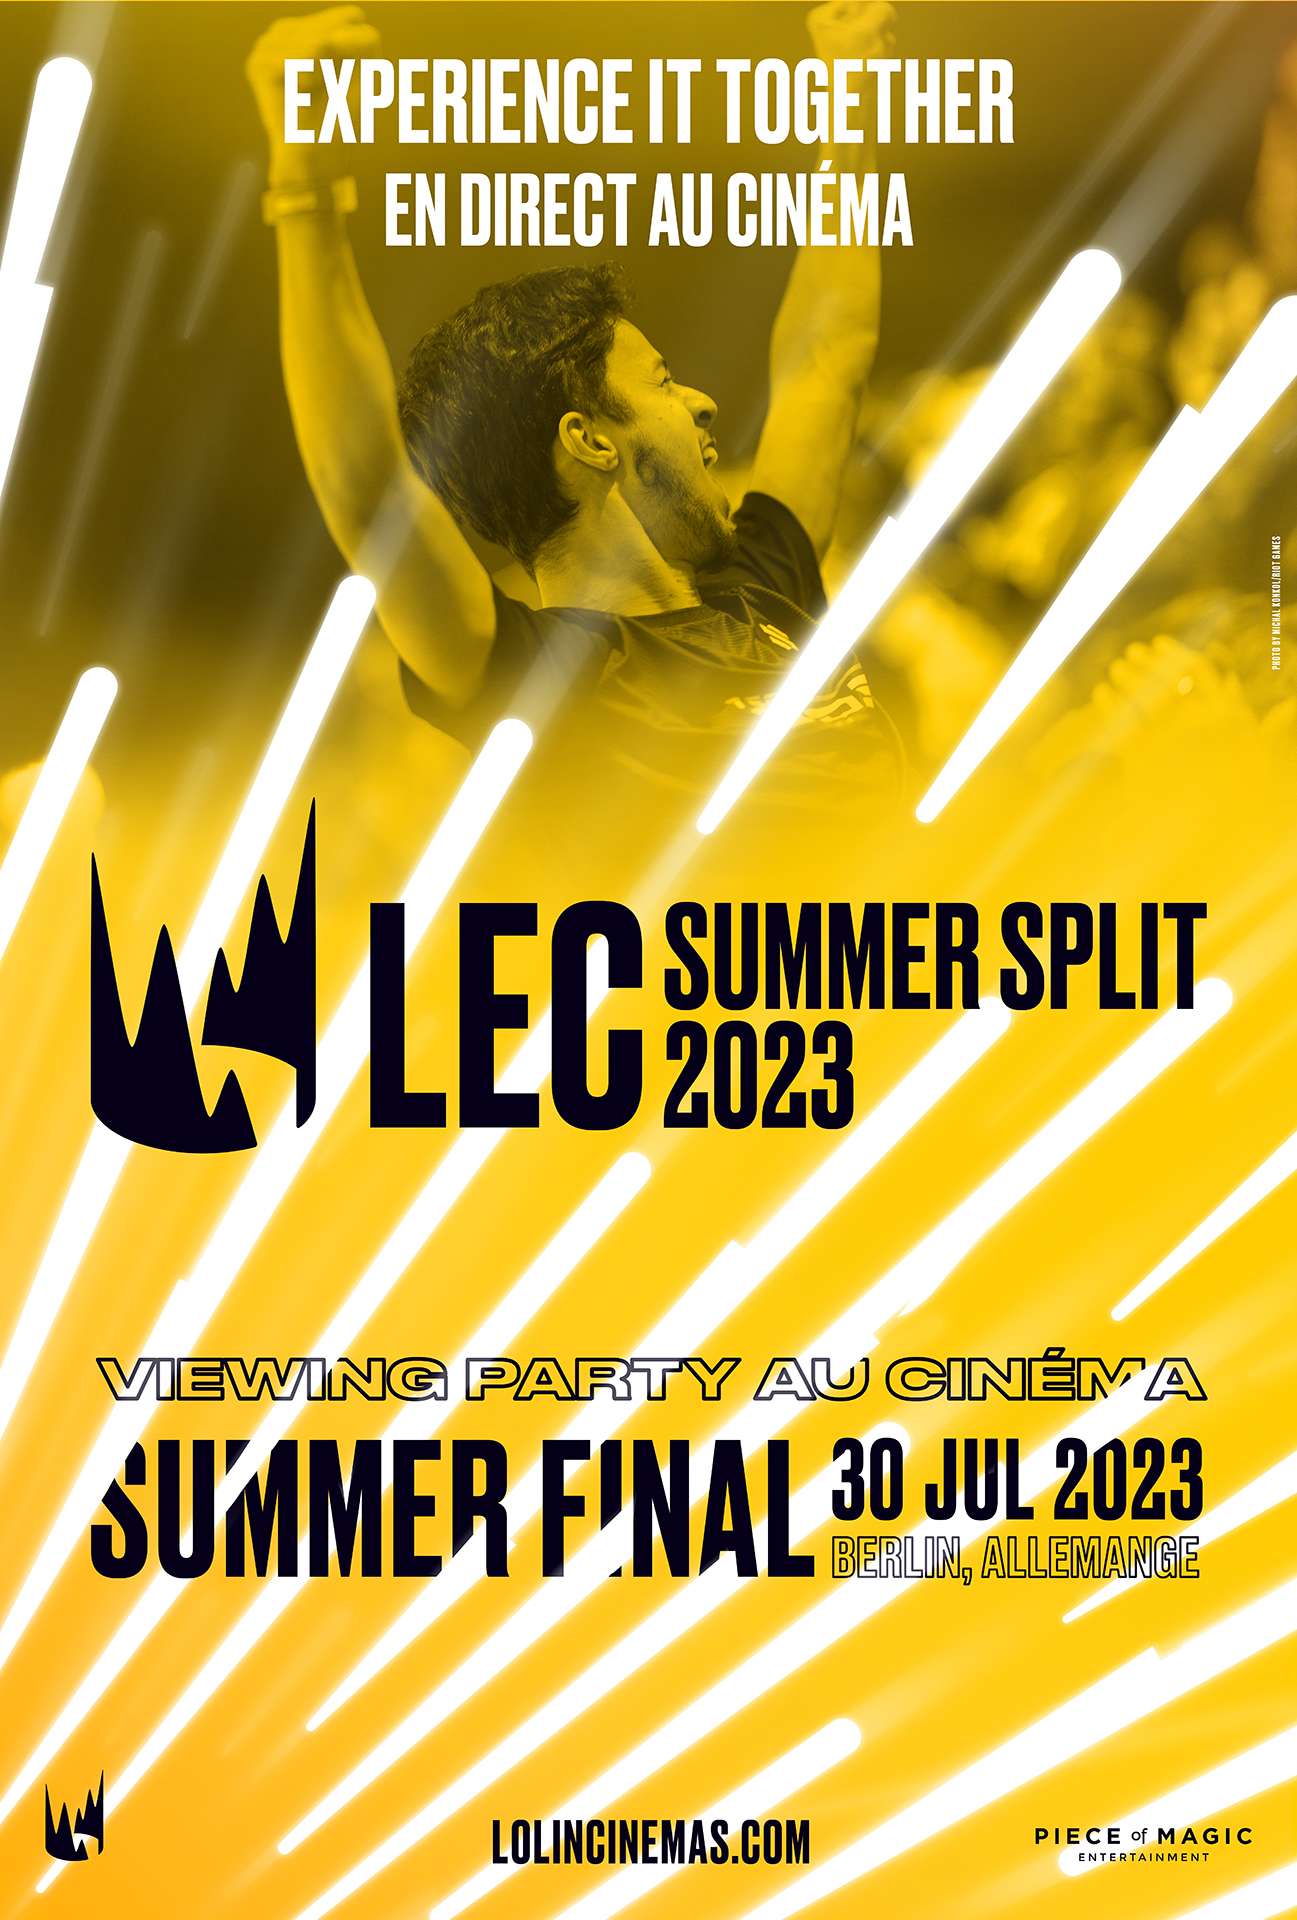 La finale du LEC Summer Split 2023 au cinéma